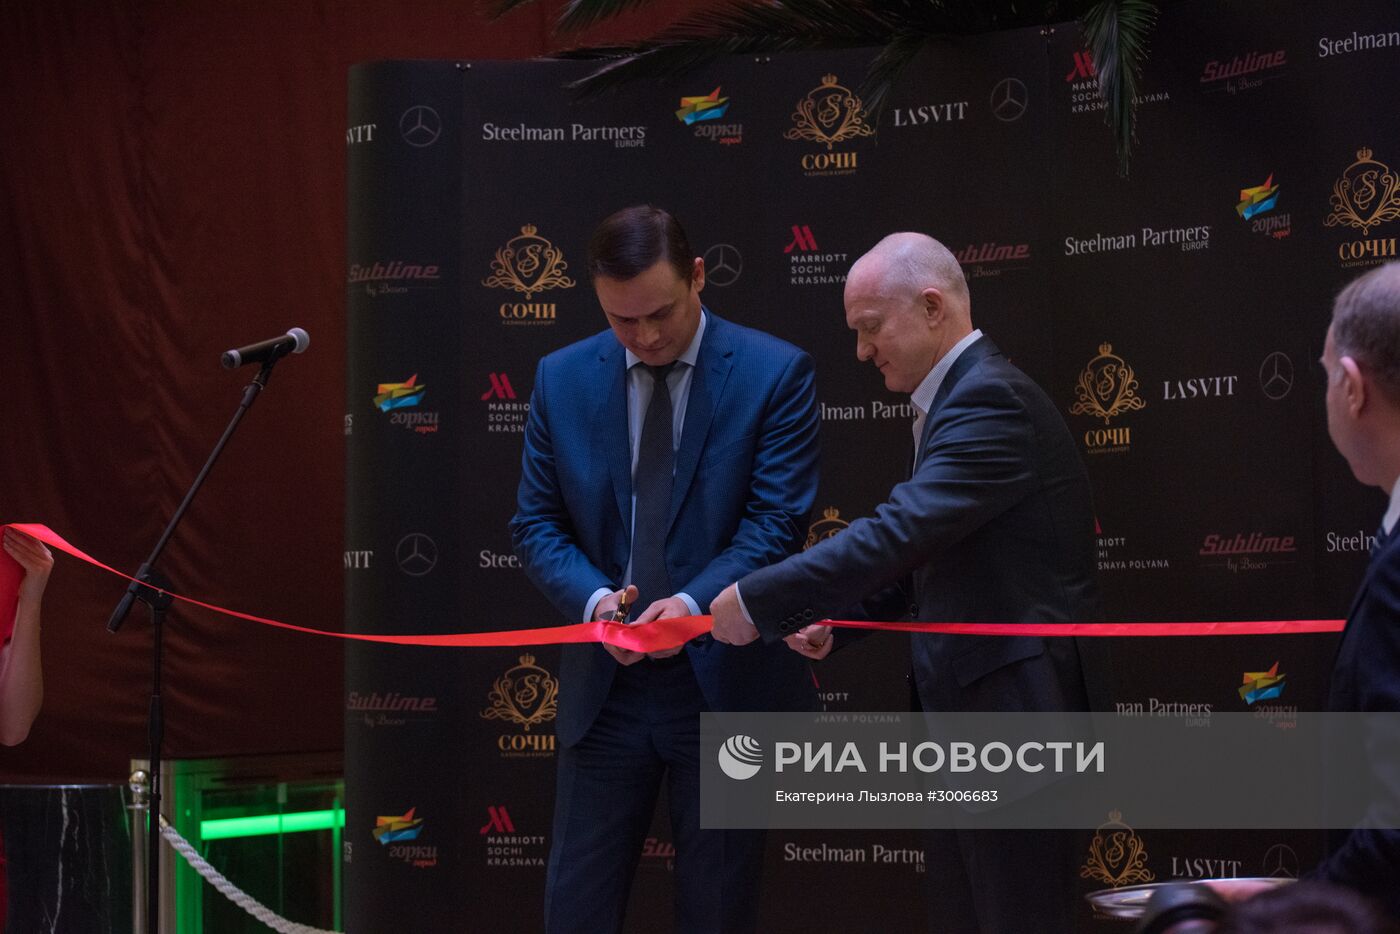 Открытие первого казино в Красной Поляне